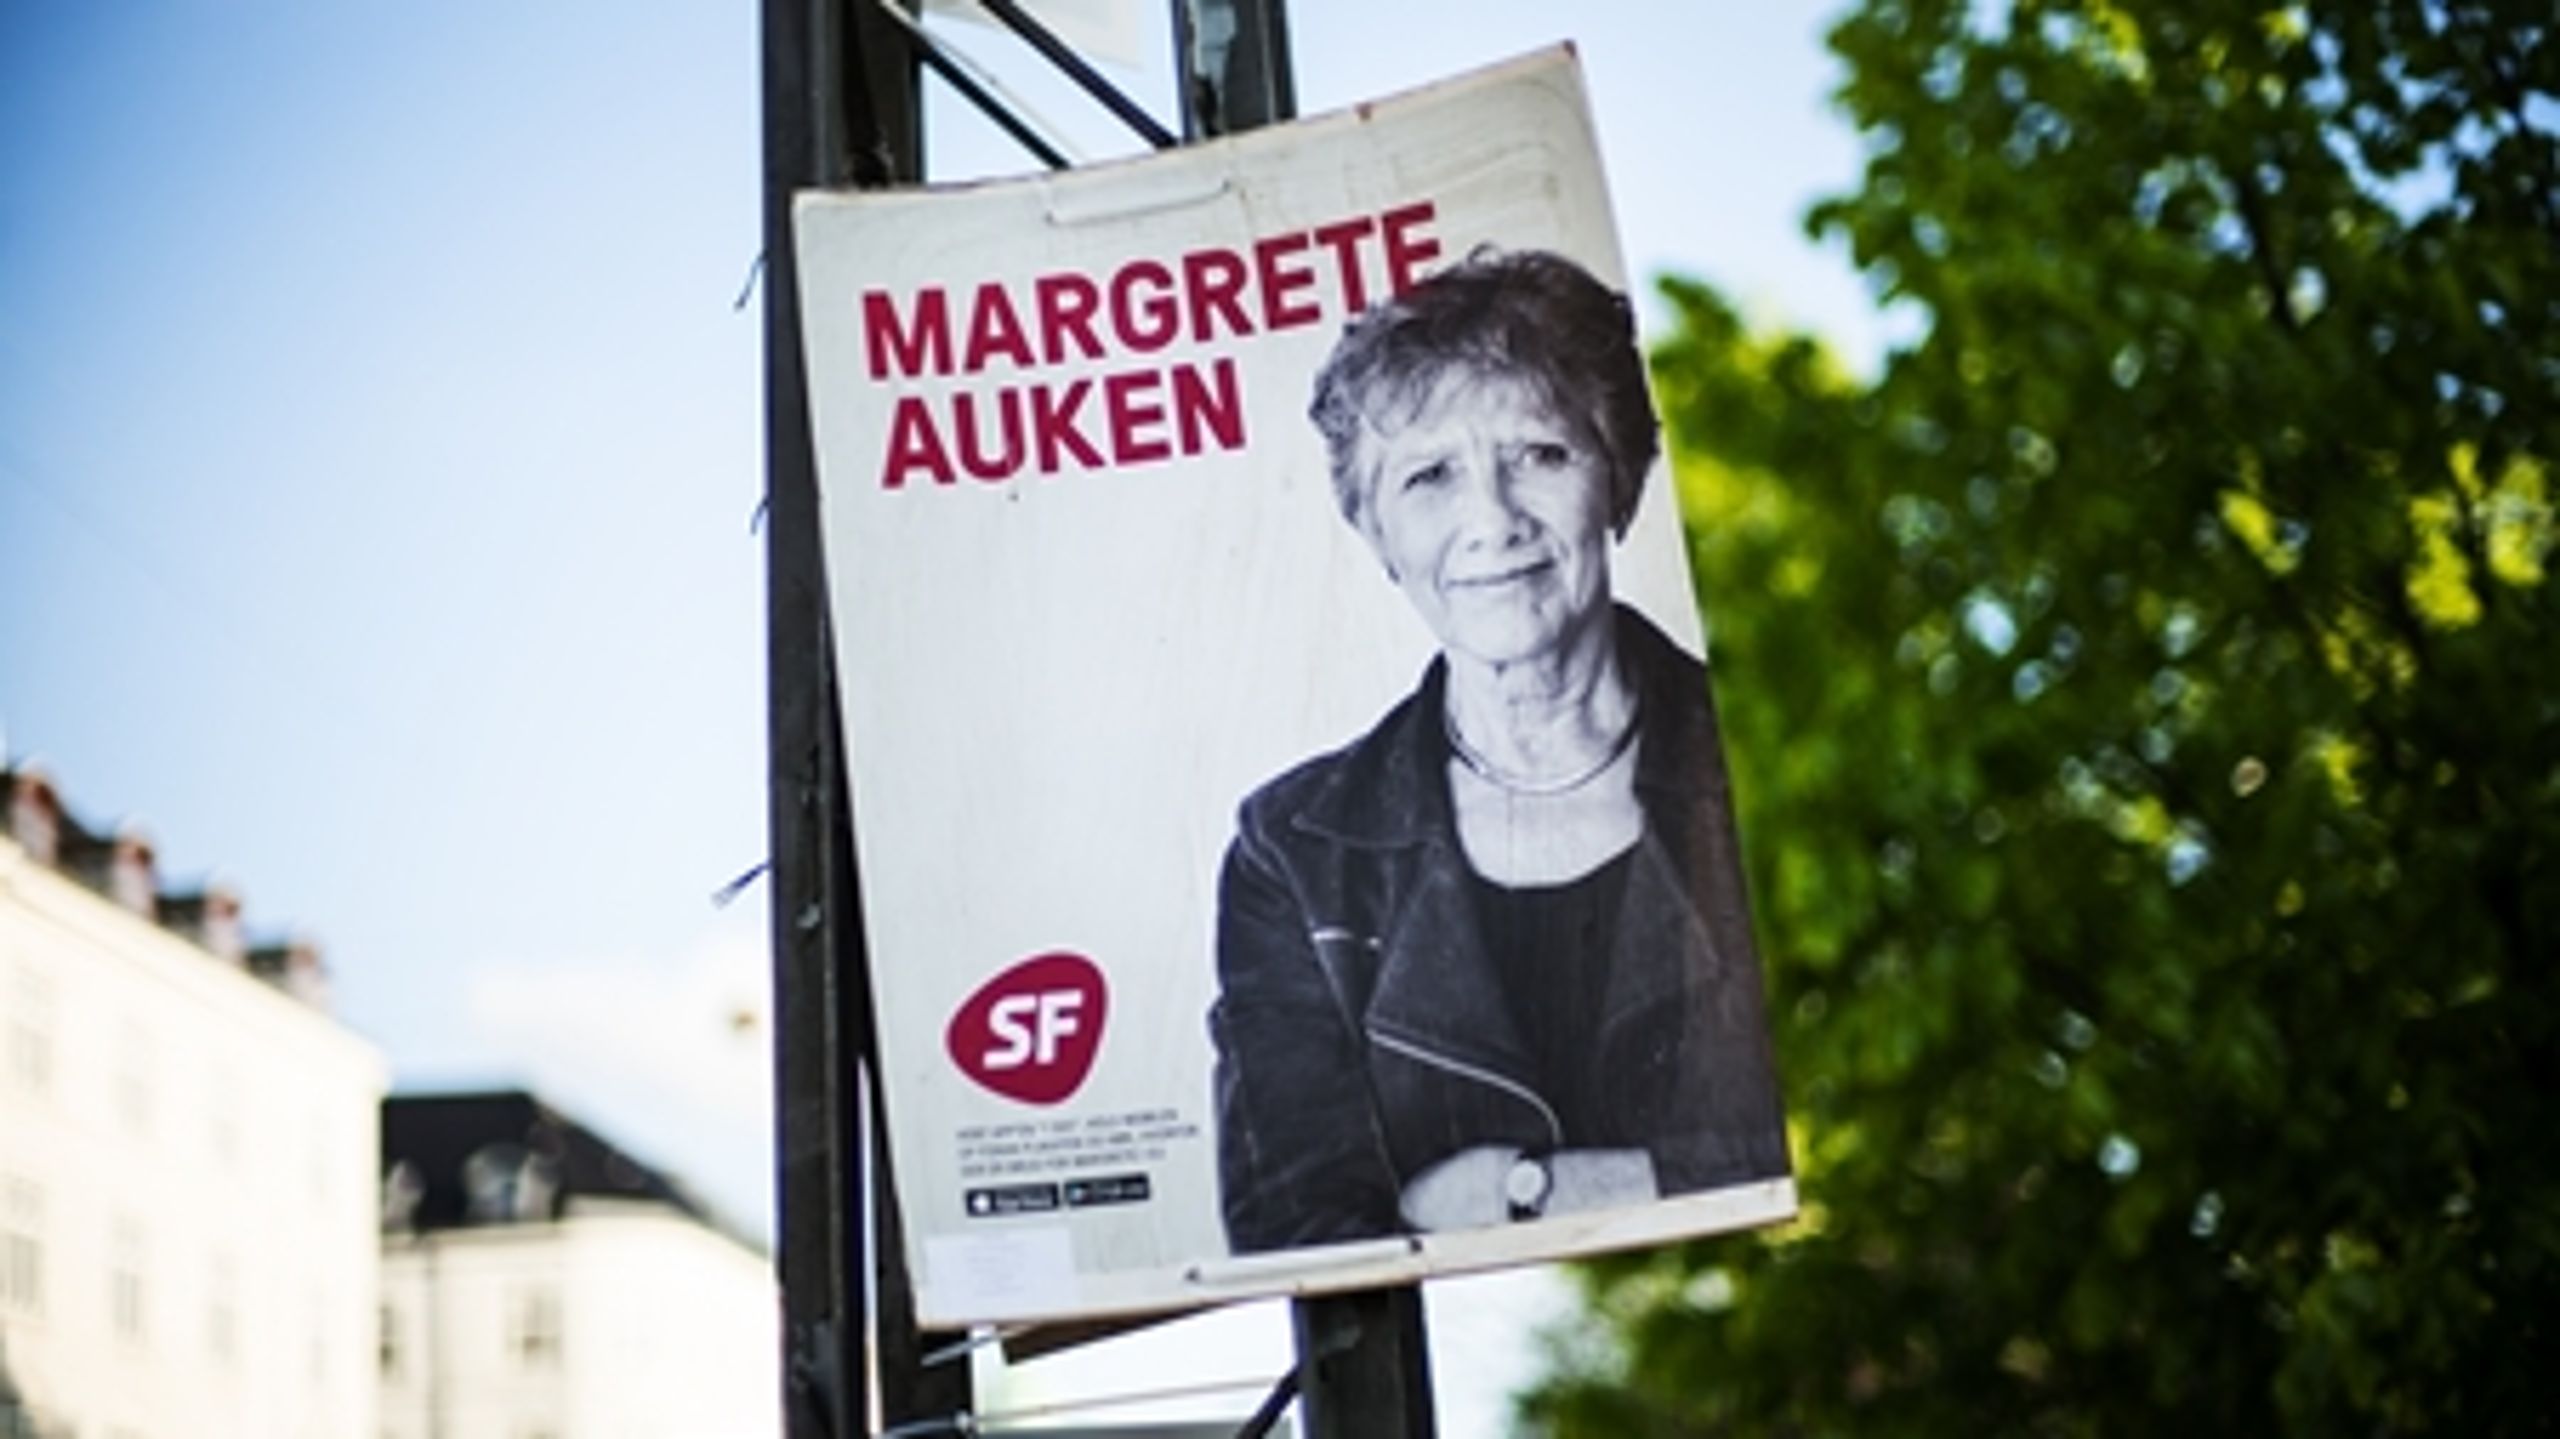 Margrete Auken (SF) står til genvalg, mens DF bliver det største parti ved valget til Europa-Parlamentet, viser nyt snit af meningsmålinger fra Risbjerg.